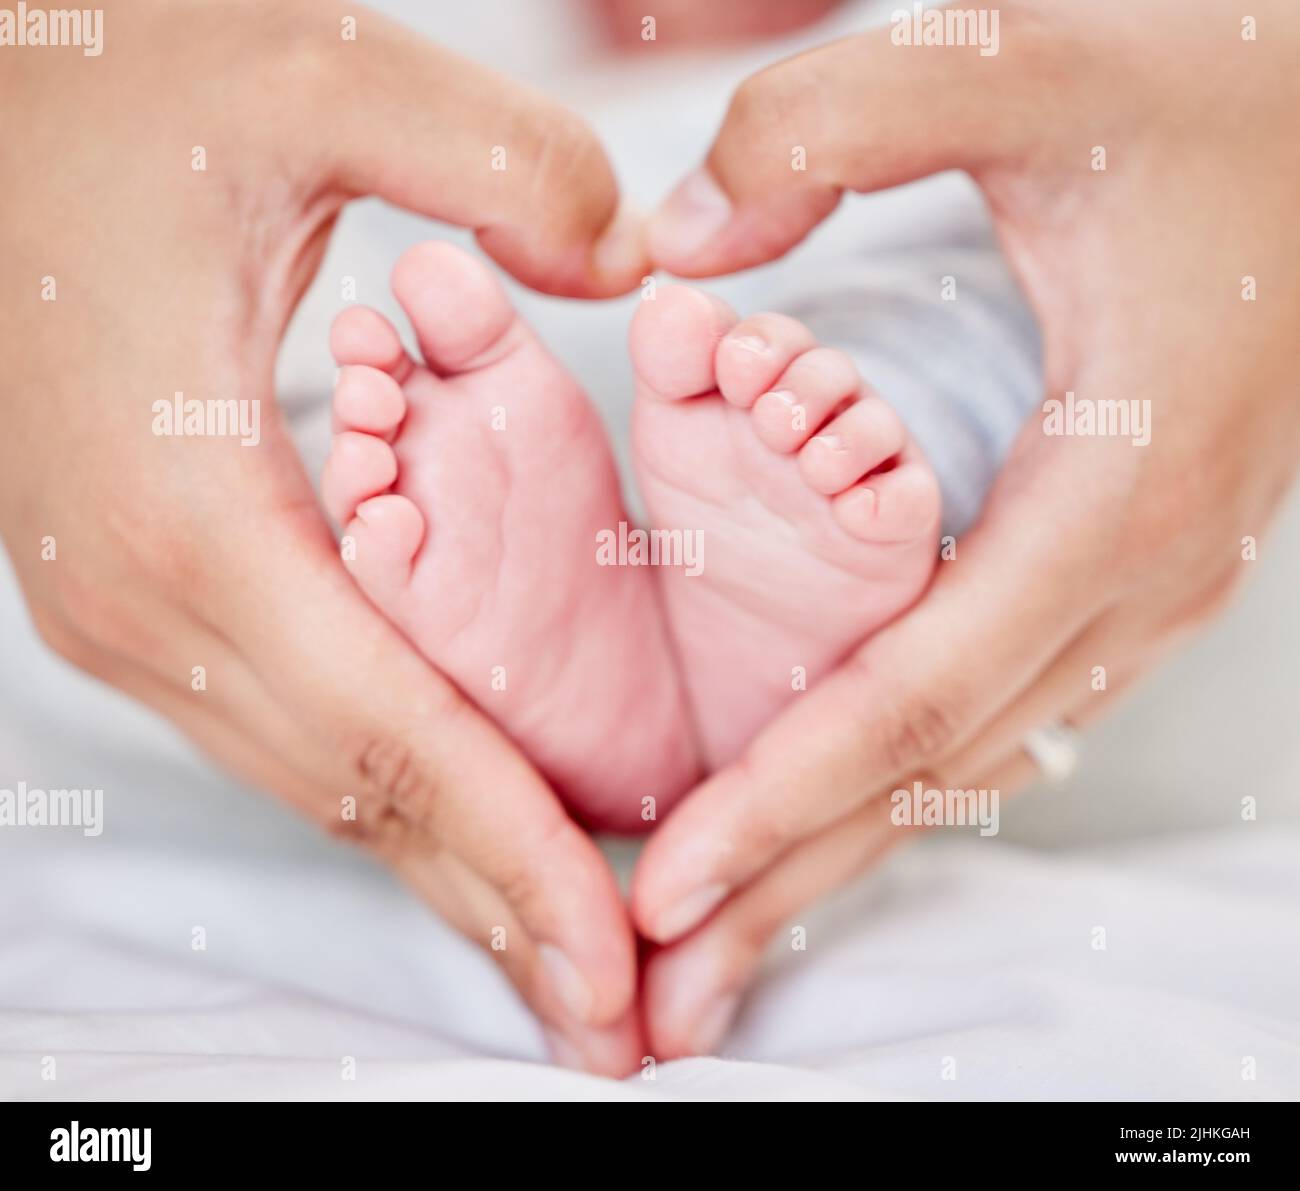 Gros plan des mains d'un parent formant une forme de coeur autour des petits pieds de bébé nouveau-né. Mère aimant son petit bébé. Petit bébé qui se repose dans sa chambre de bébé Banque D'Images